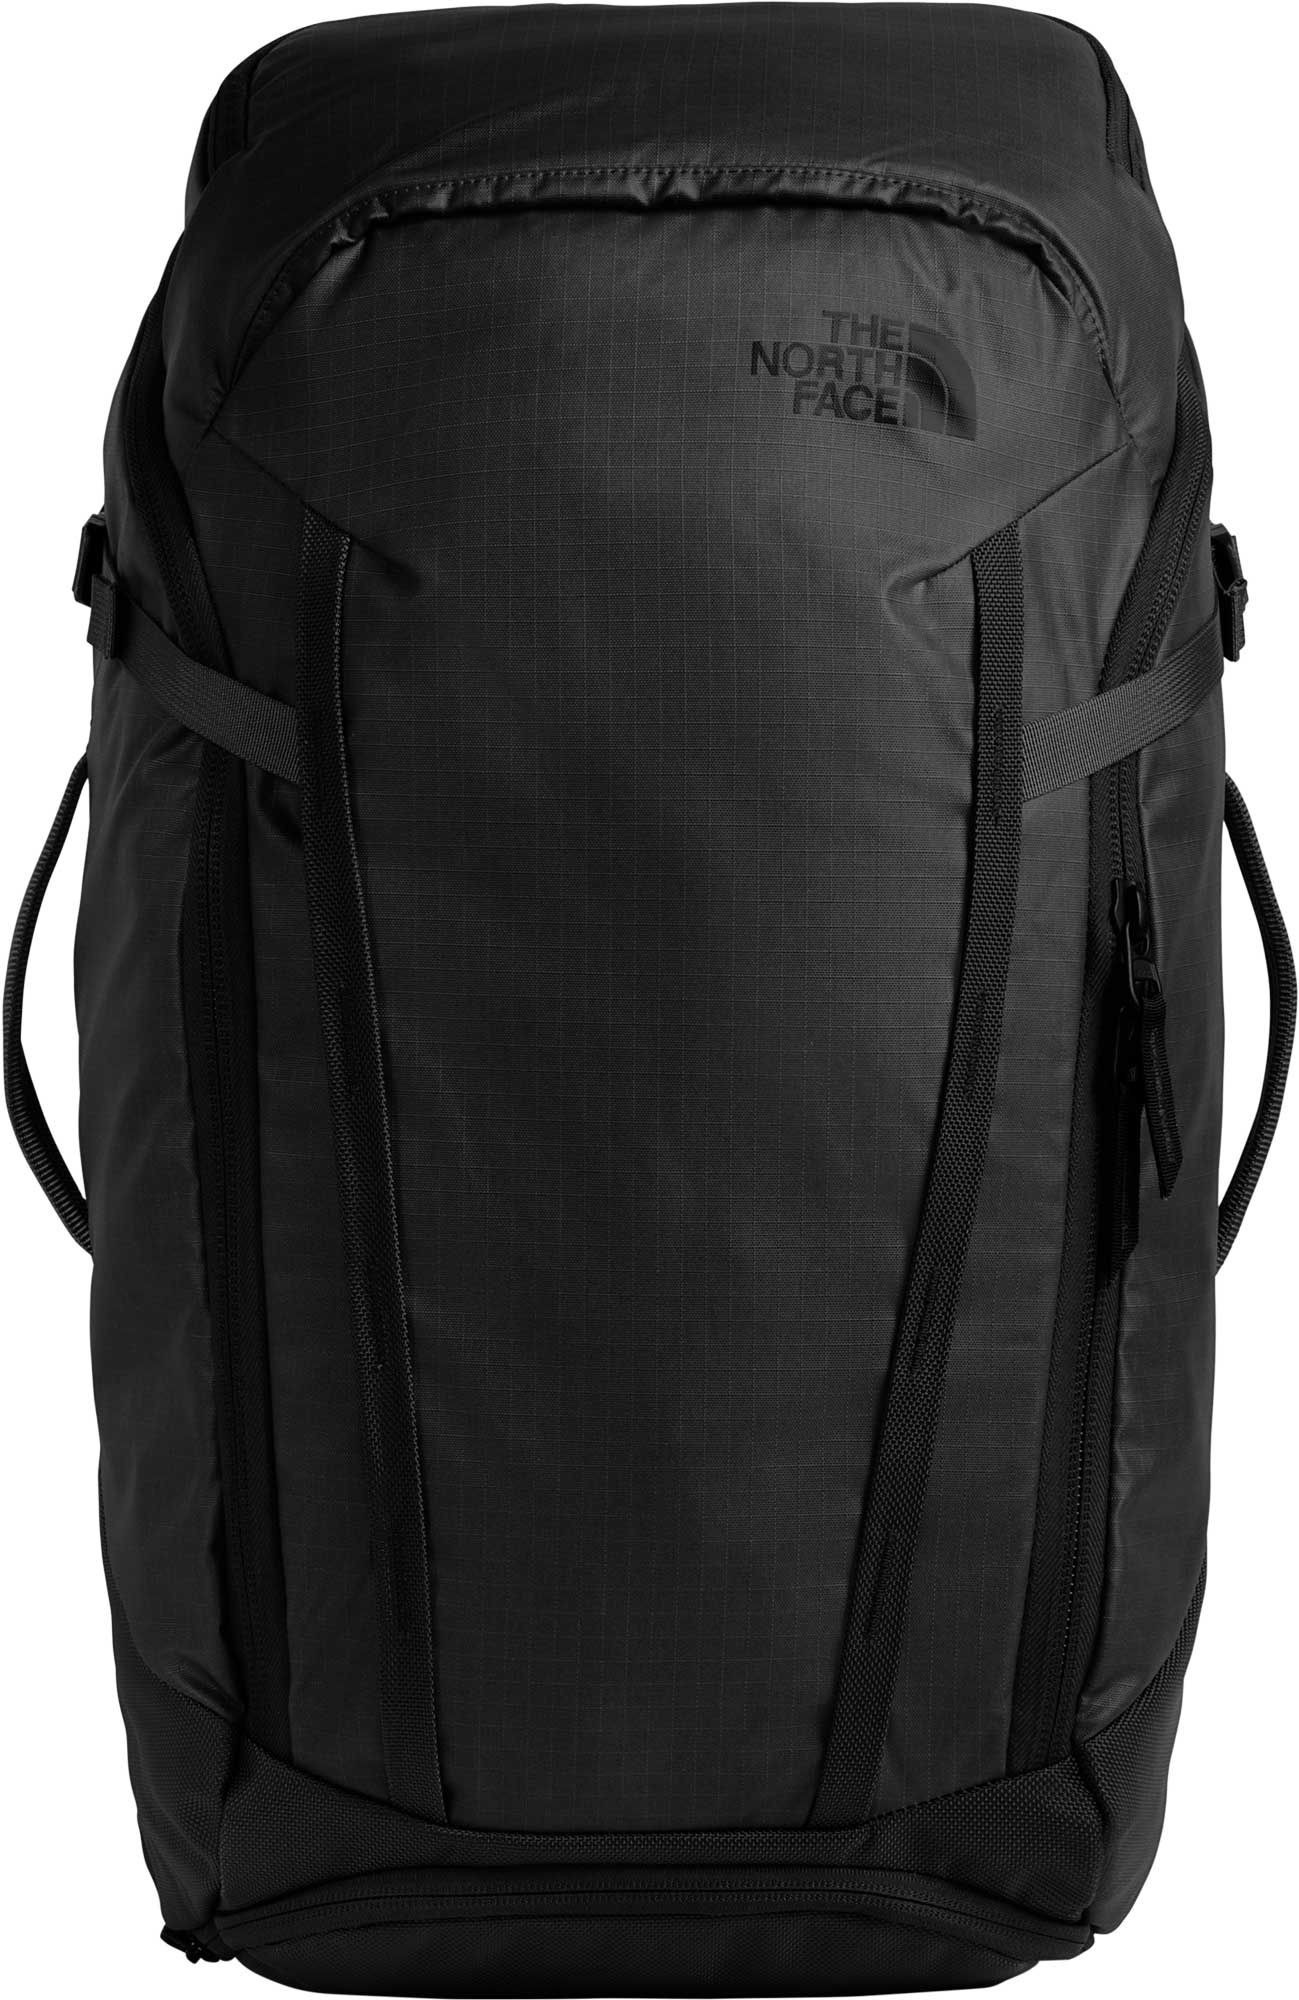 stratoliner backpack